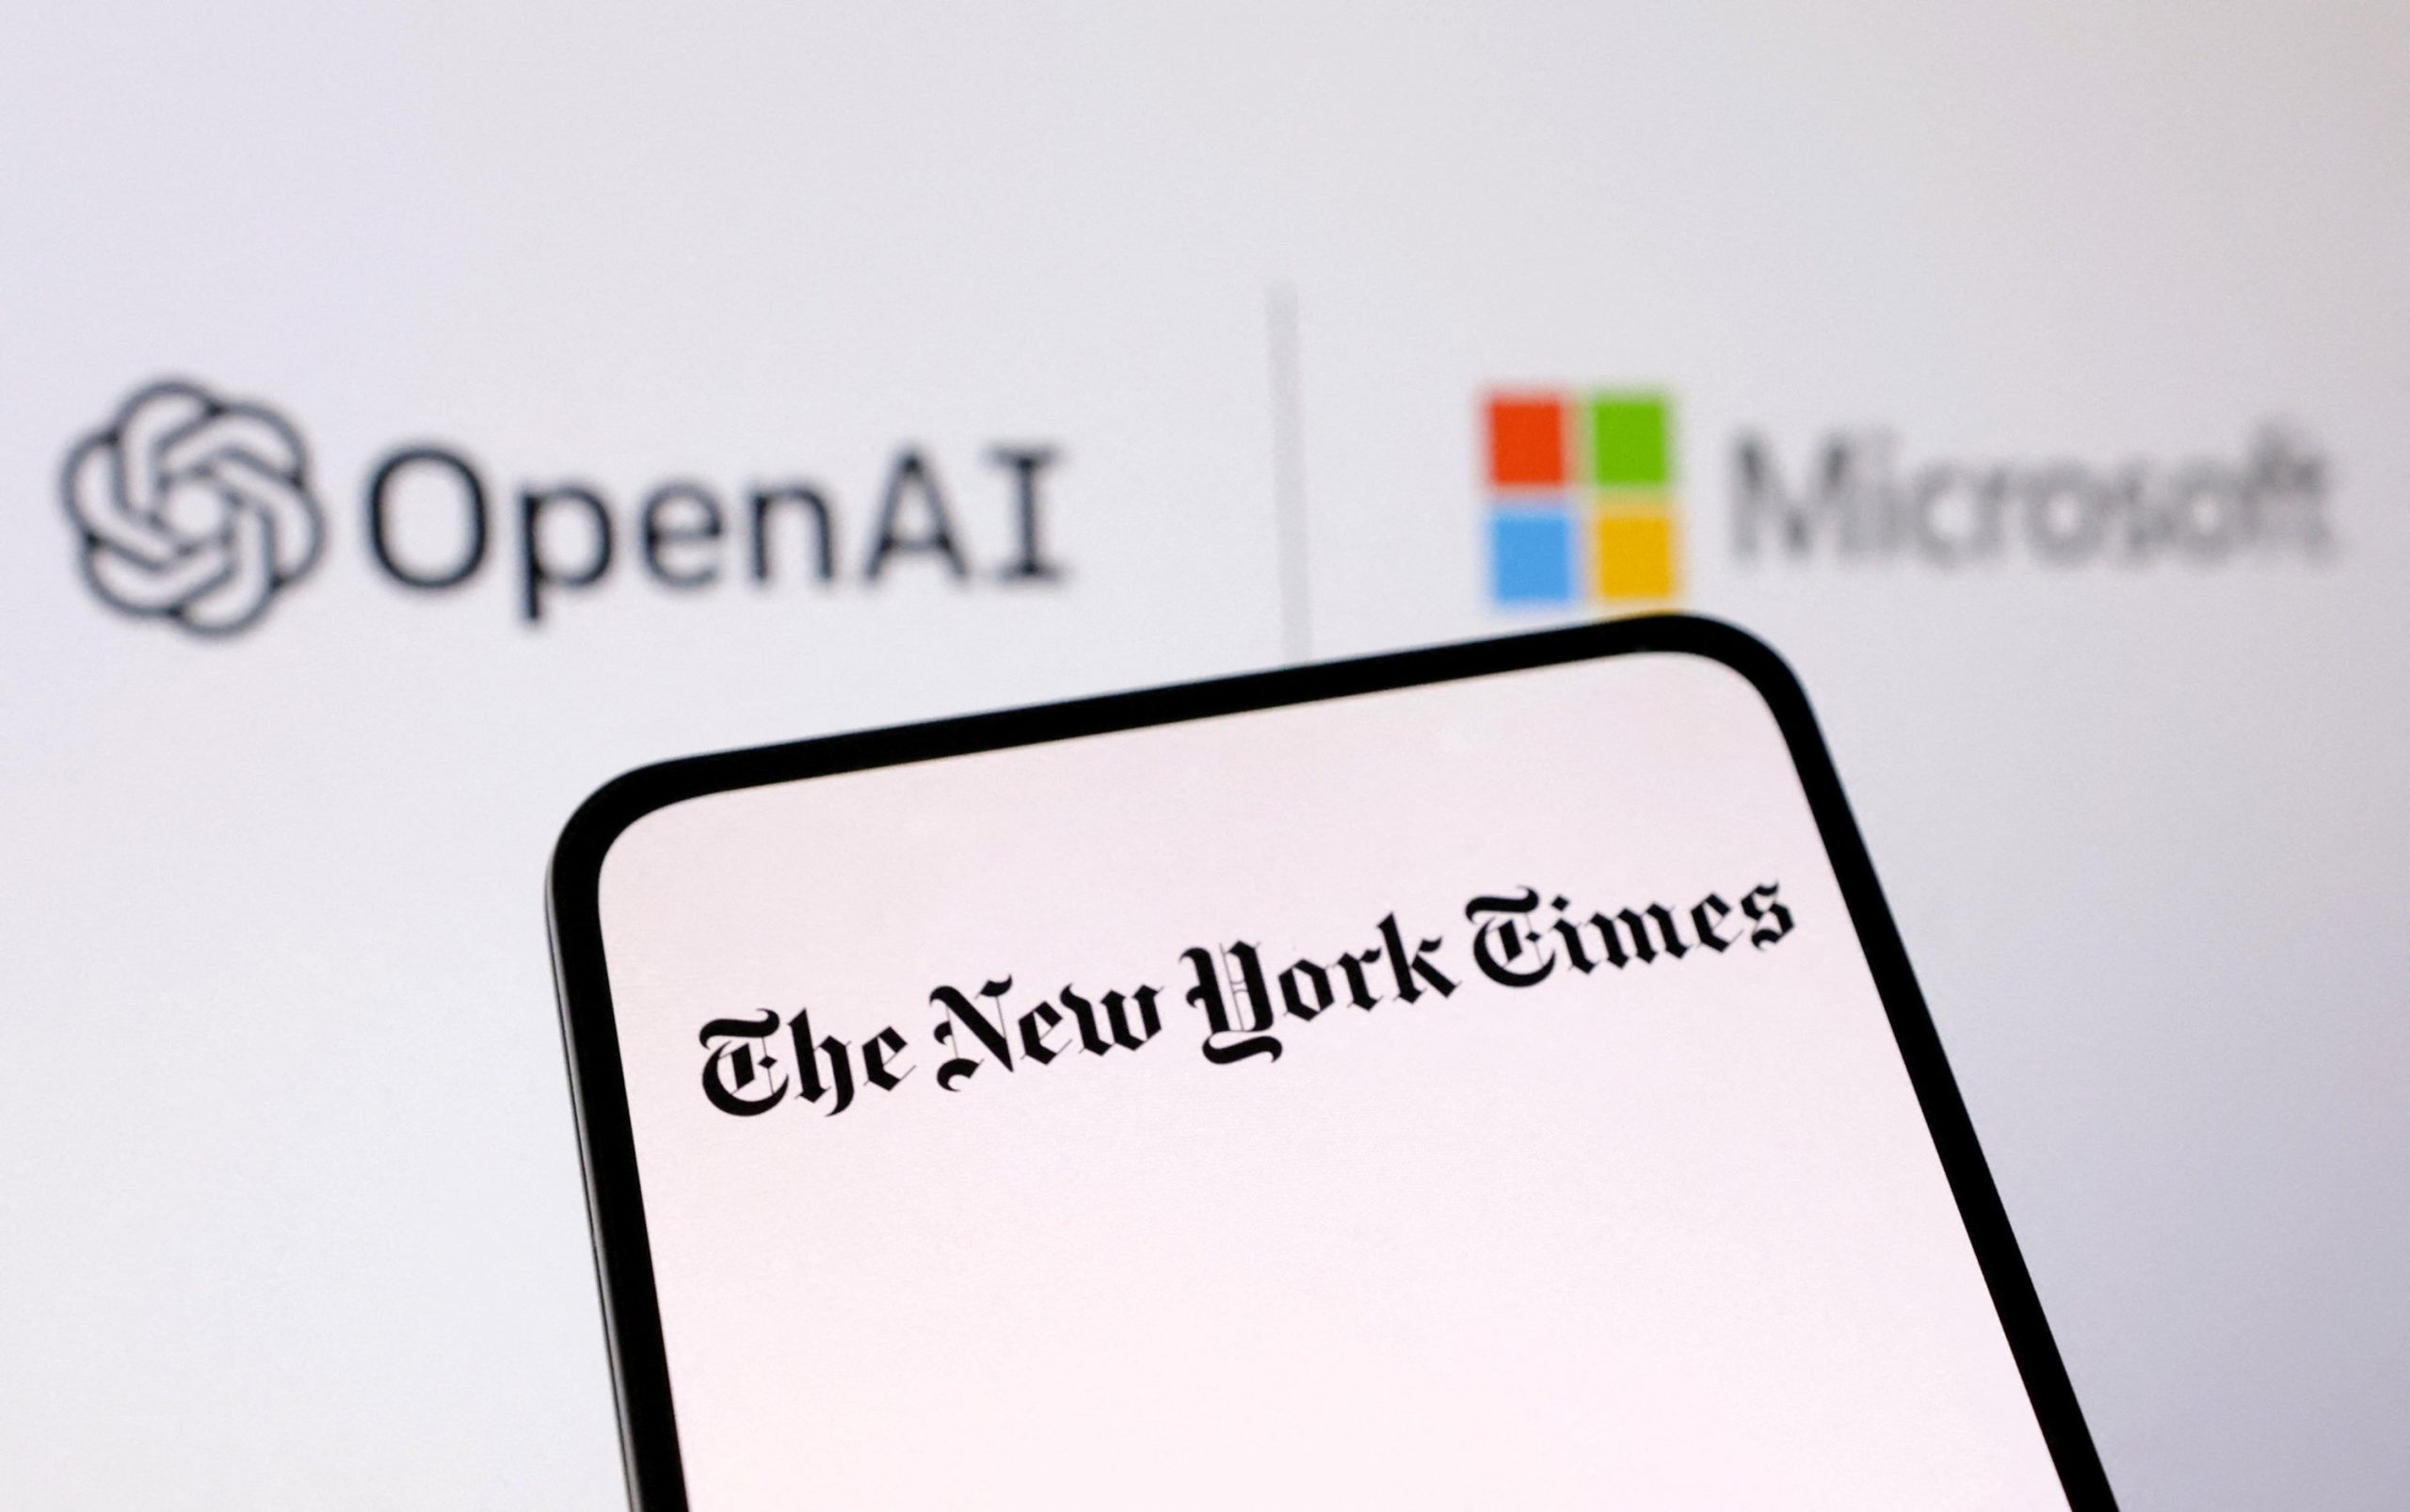 The New York Times demanda a Open AI por usar sus textos para entrenar a su IA